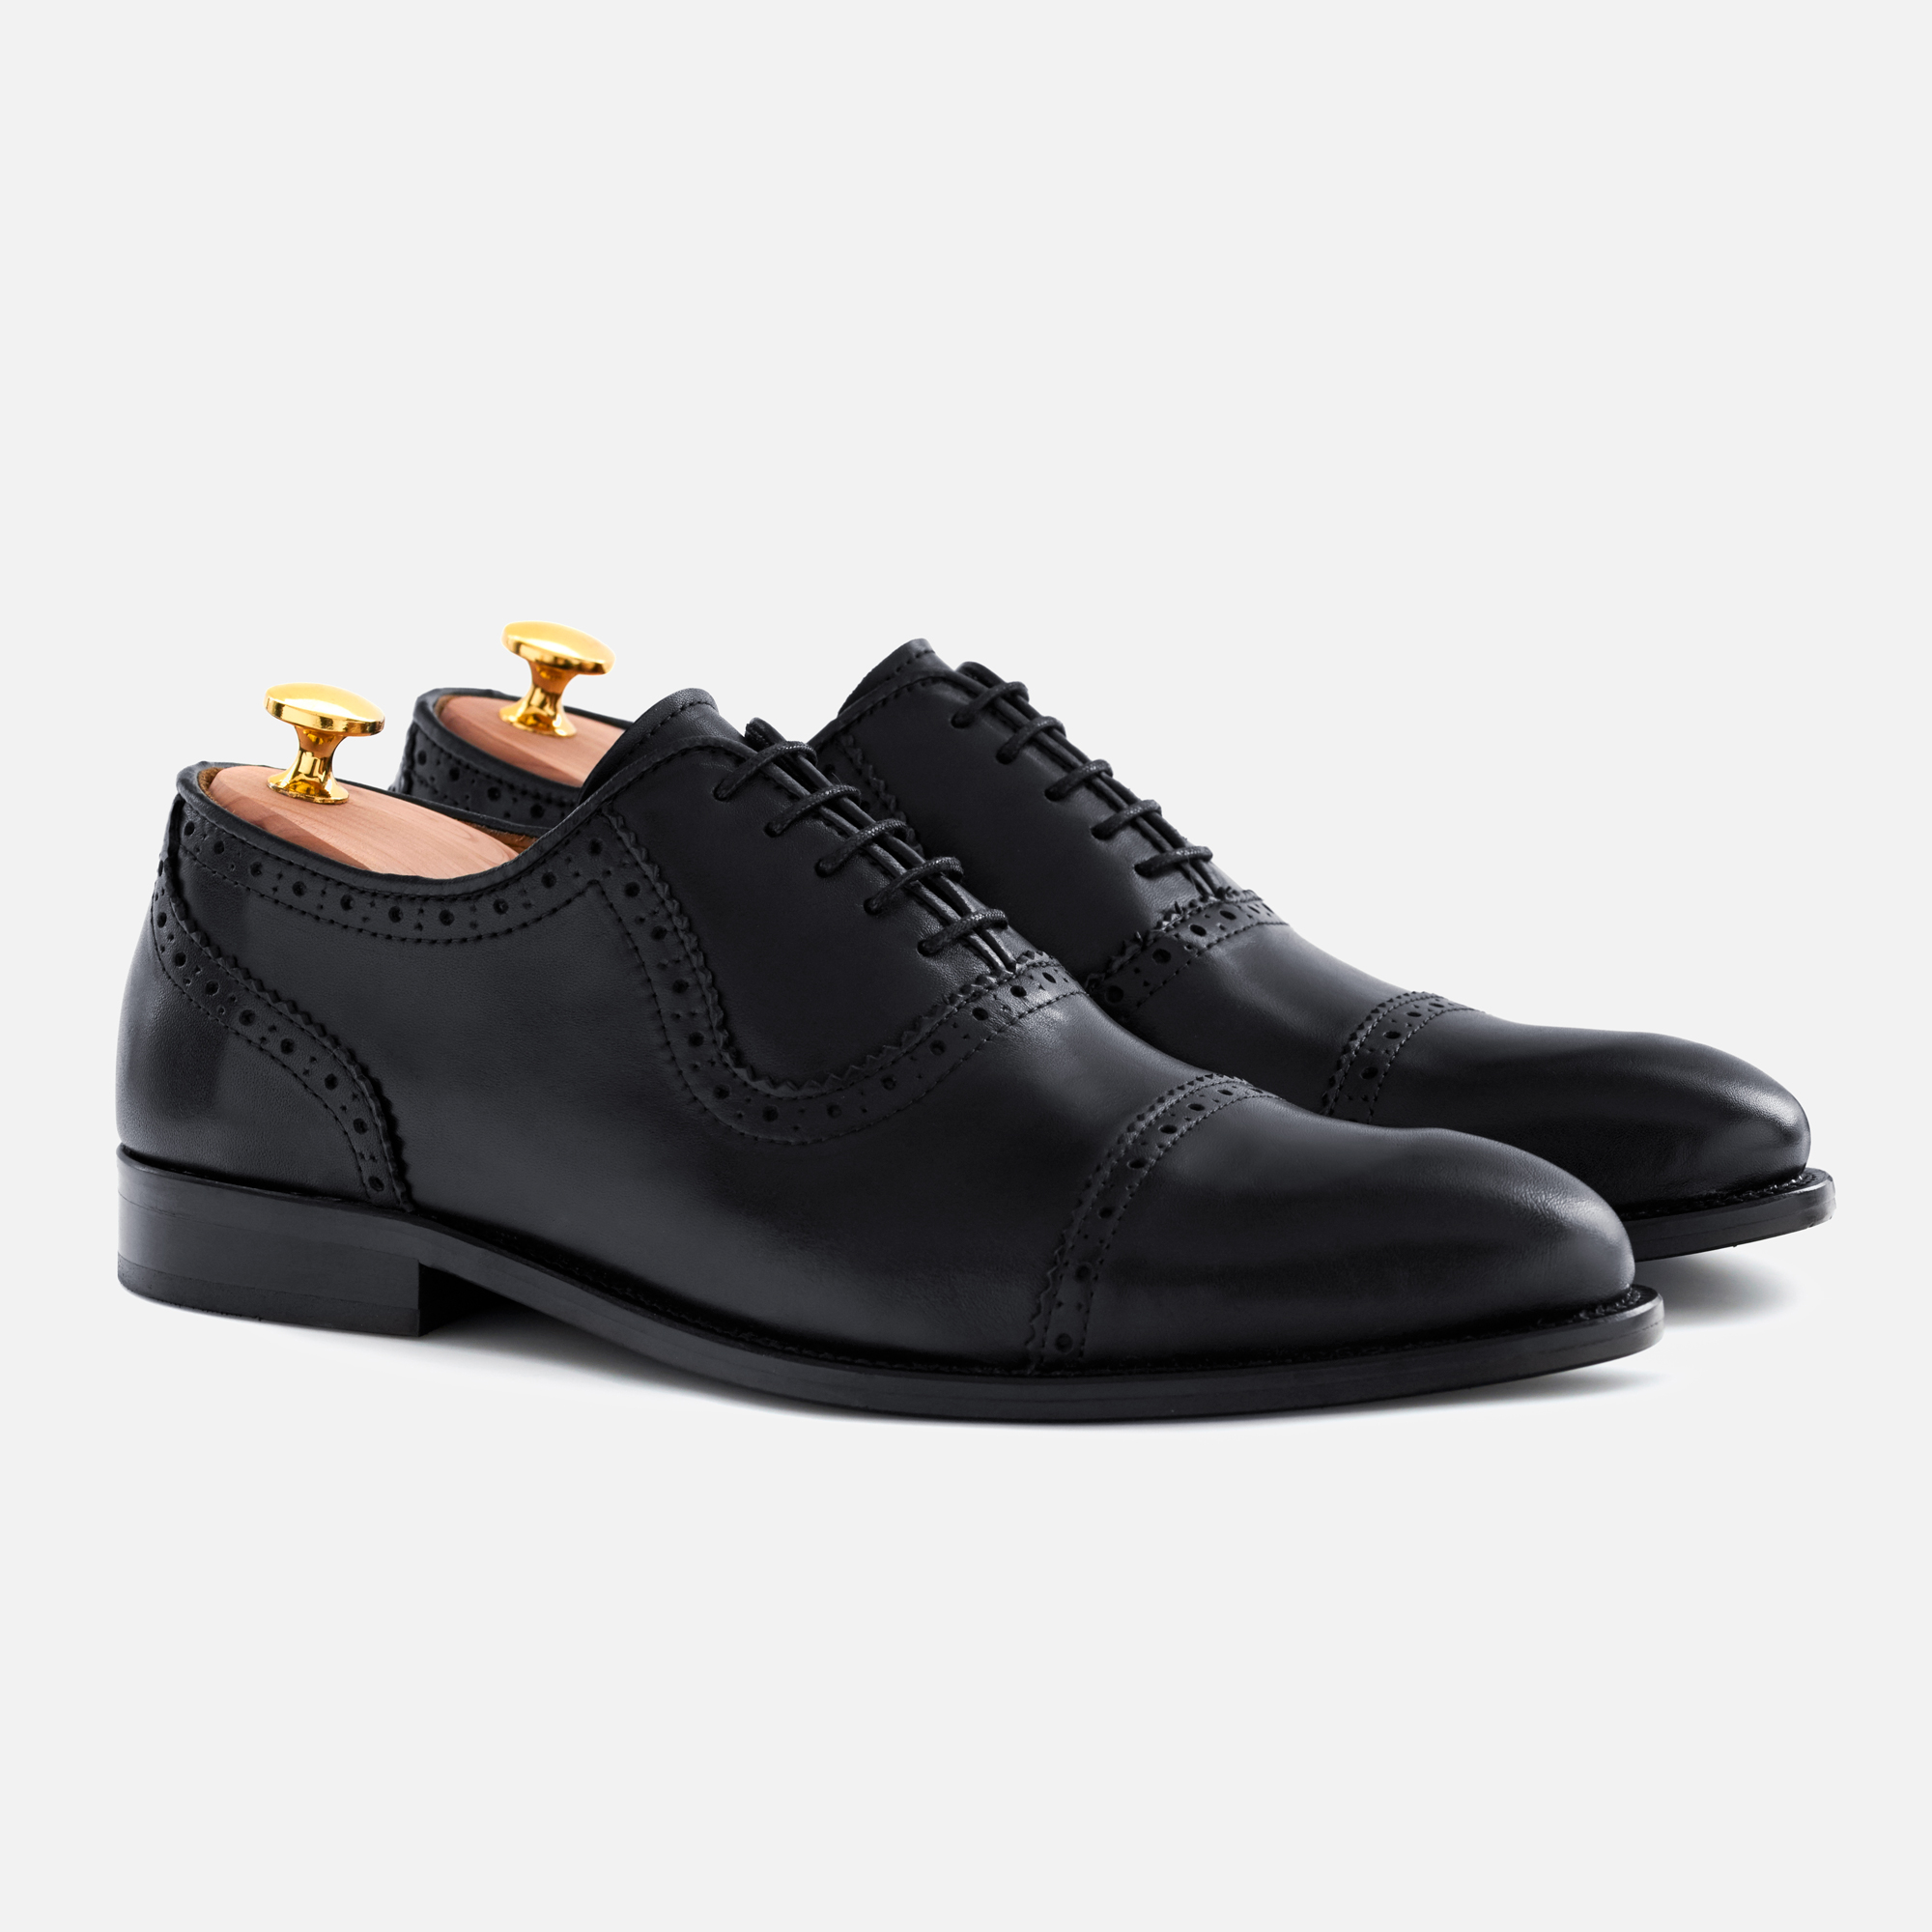 A Beckett Simonon black shoes